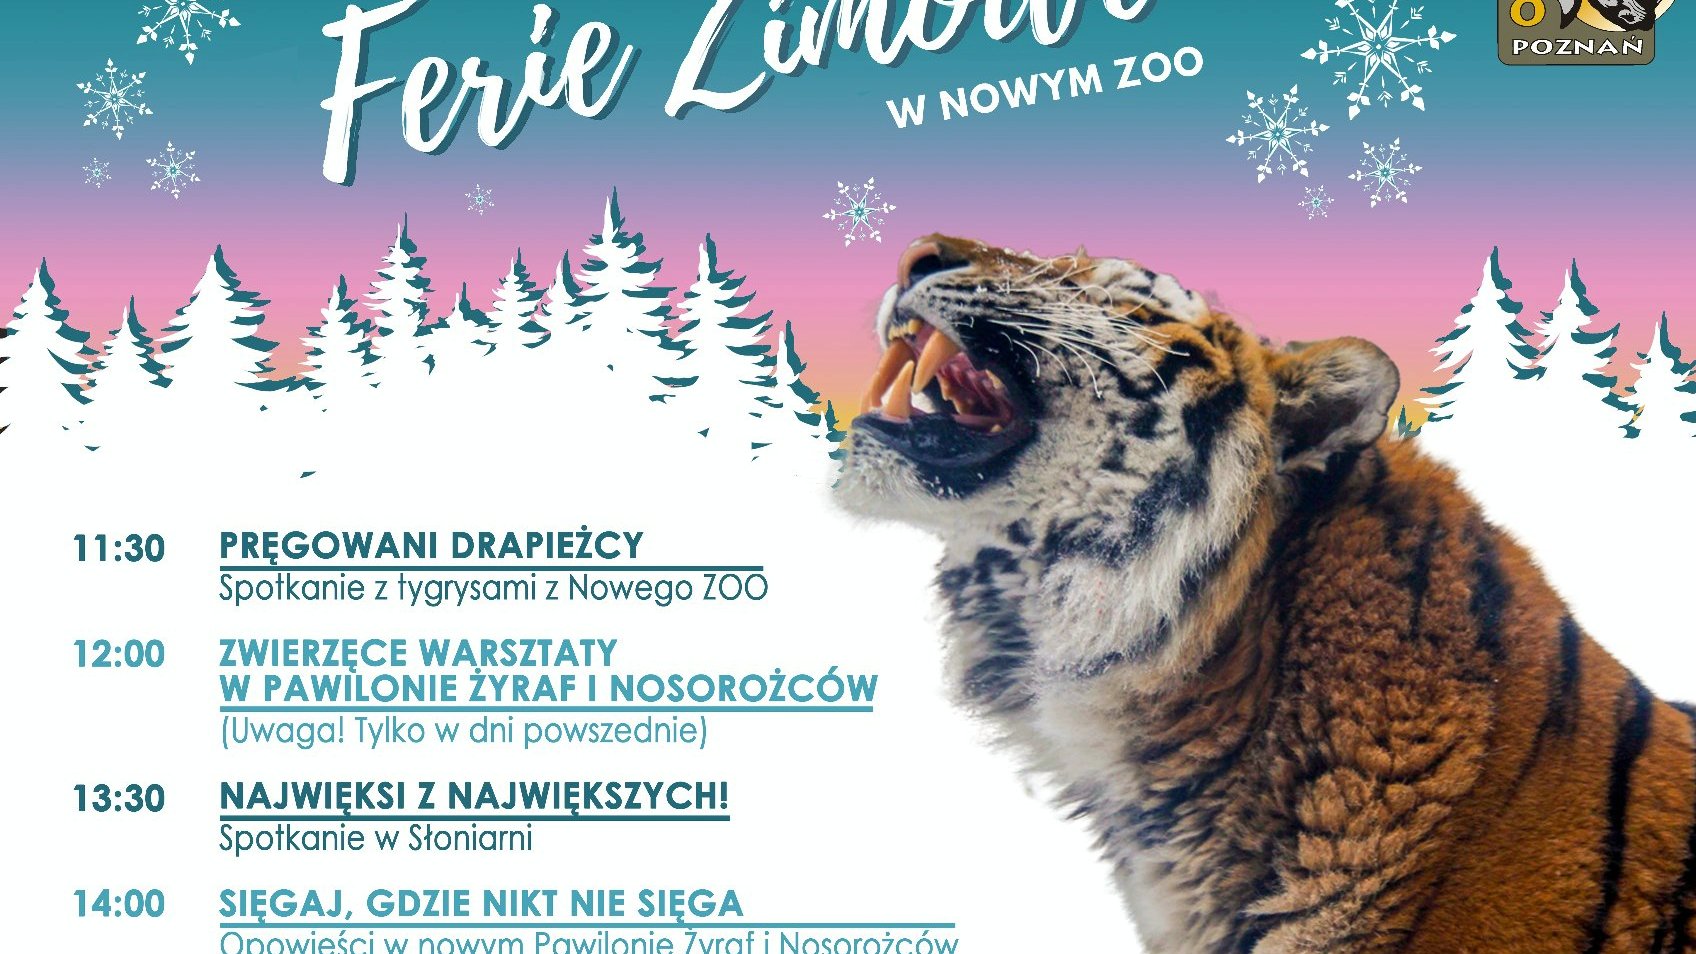 Grafika z tygrysem w zimowym klimacie z informacjami o wydarzeniach